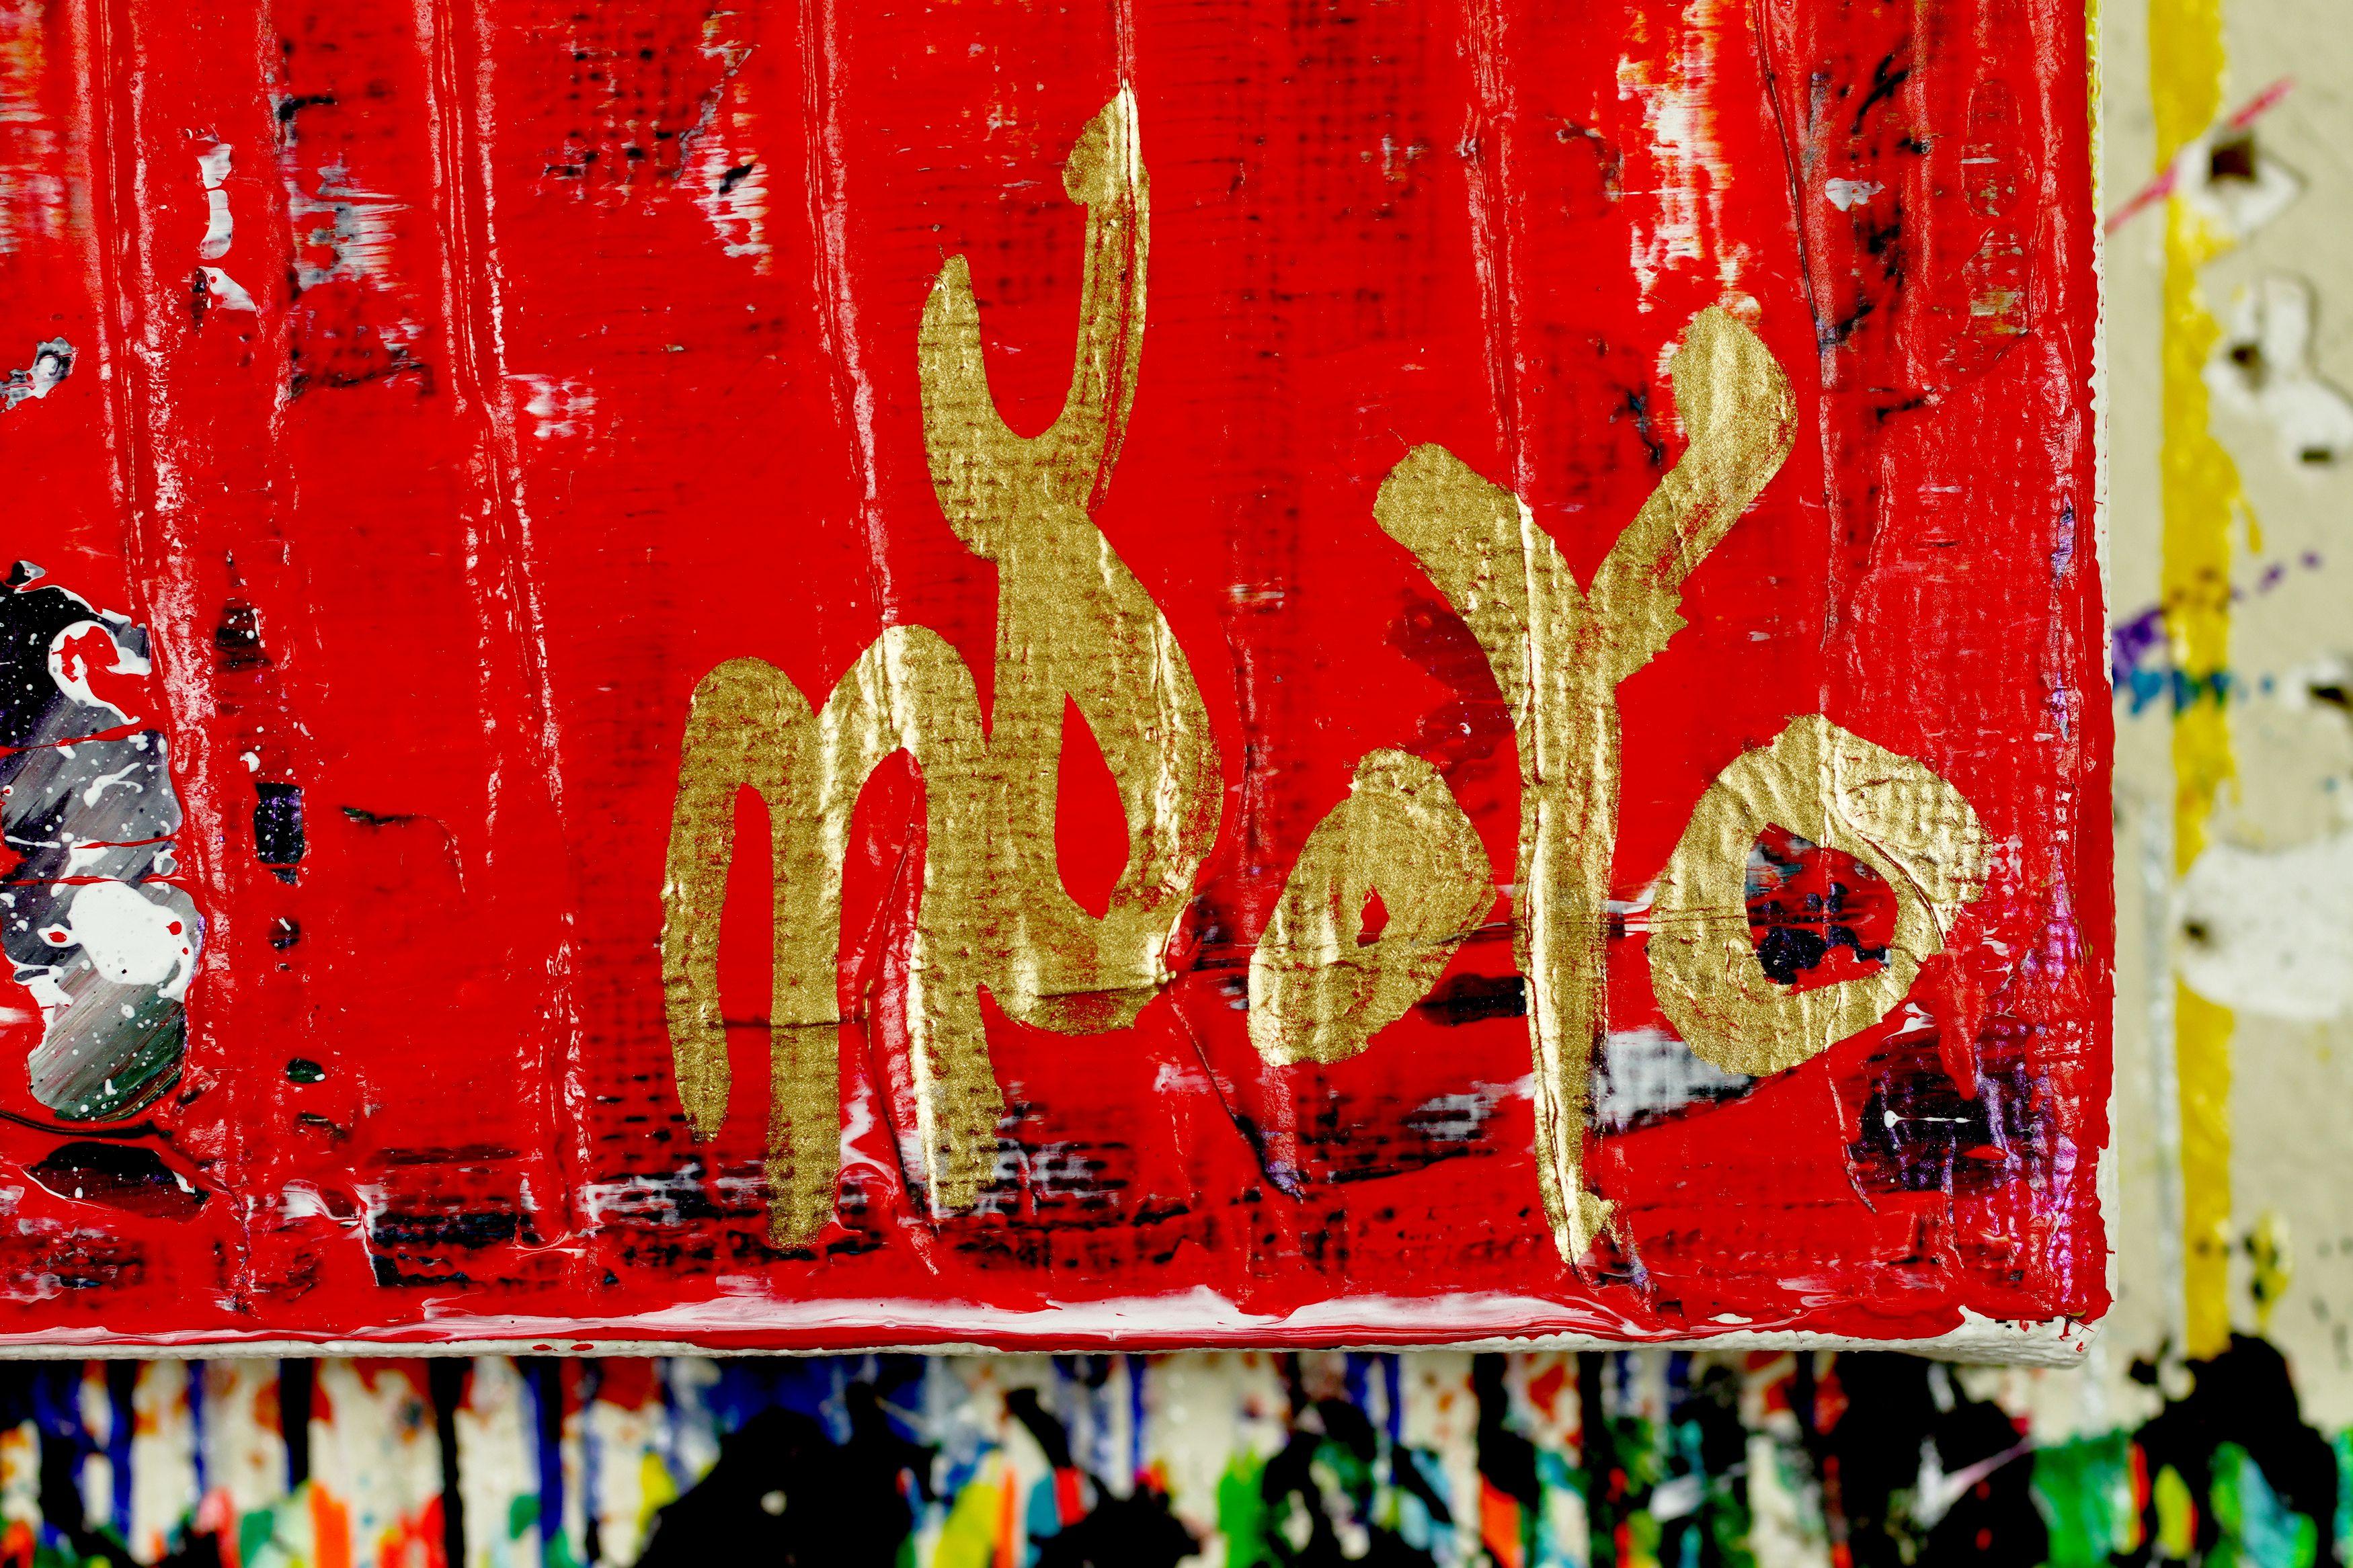 abstrakte feurige Malerei  acryl auf Leinwand  von der Natur inspiriert    Dieses Kunstwerk wurde durch das Übereinanderlegen und Mischen dünner Schichten von Gebrannter Siena, Gelb, Magenta und Rot erstellt.    Bereit zum Aufhängen    Ich lege ein